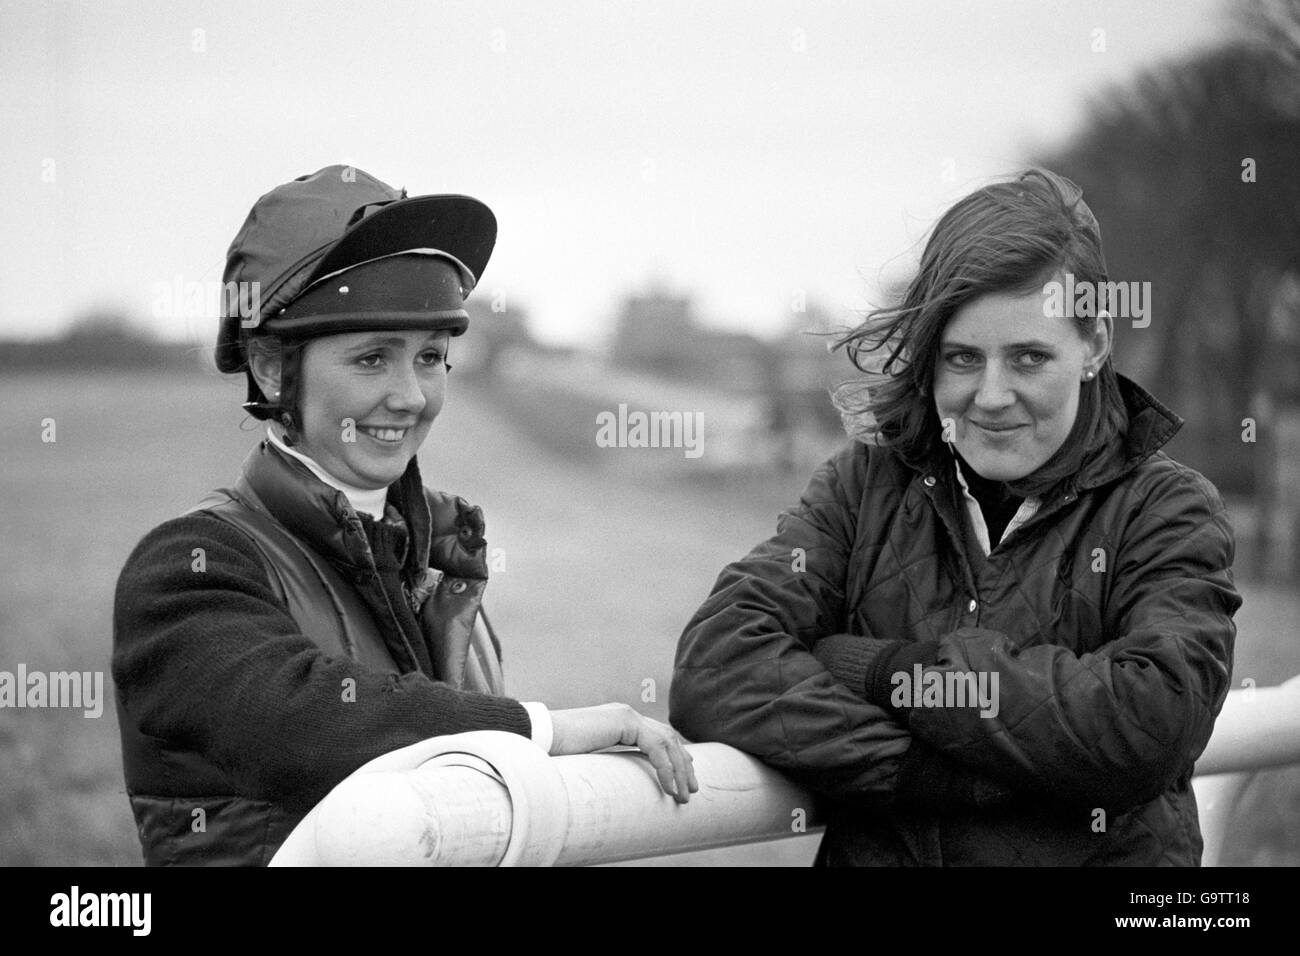 Hores Racing - Ladies Day à Aintree, Liverpool.Geraldine Rees (l) et Charlotte Brew, les deux dames qui participent au Grand National d'aujourd'hui à Aintree. Banque D'Images